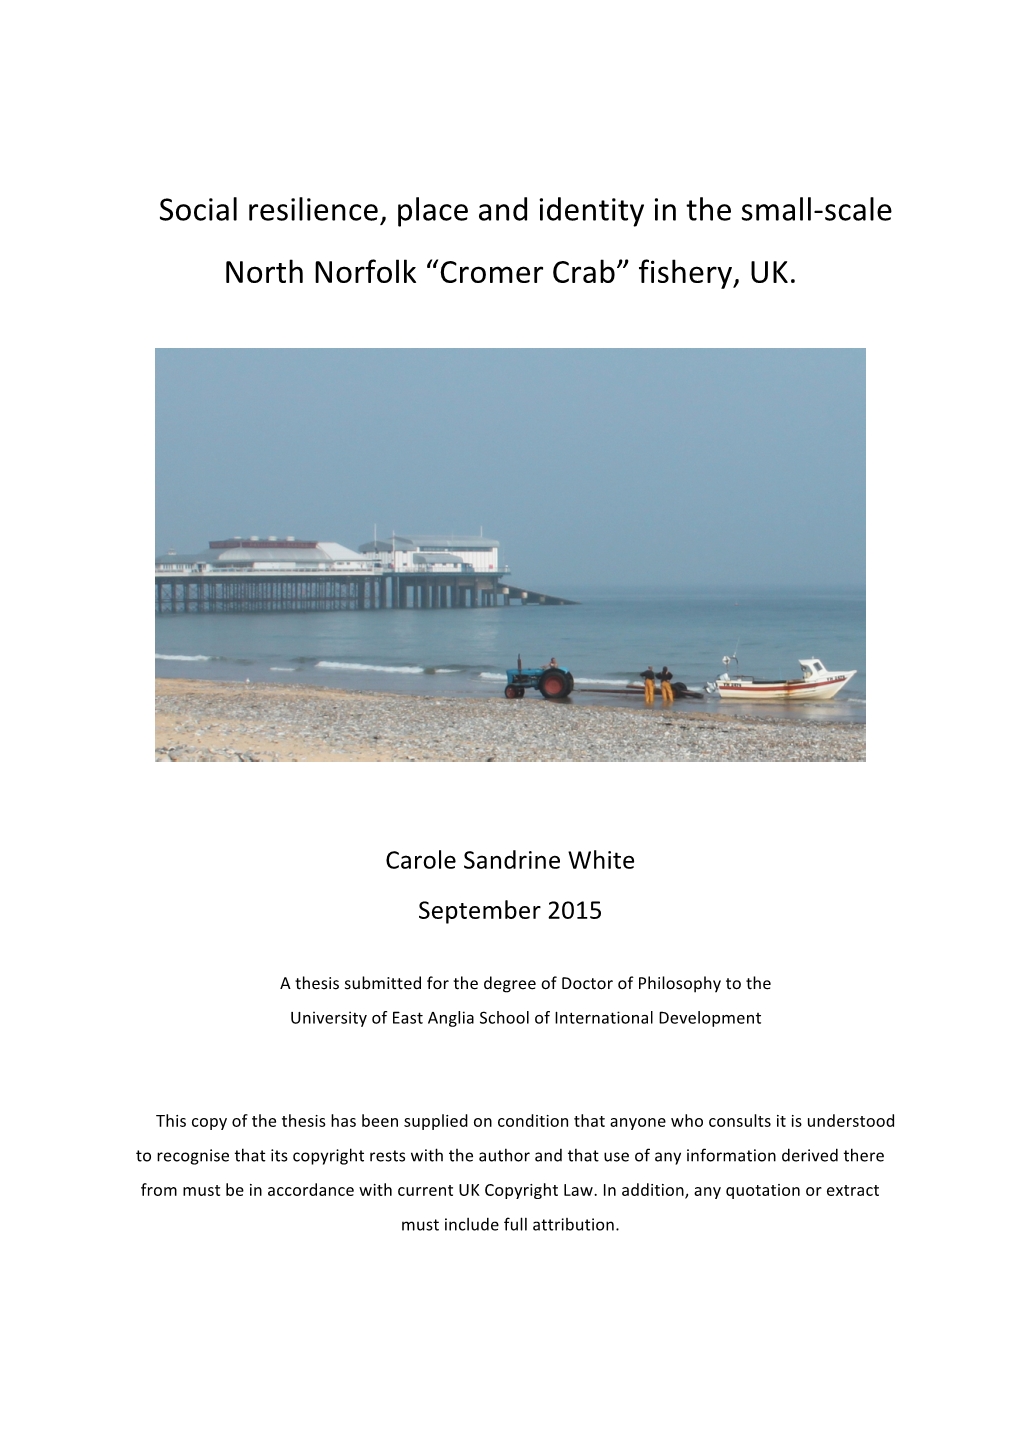 Cromer Crab” Fishery, UK